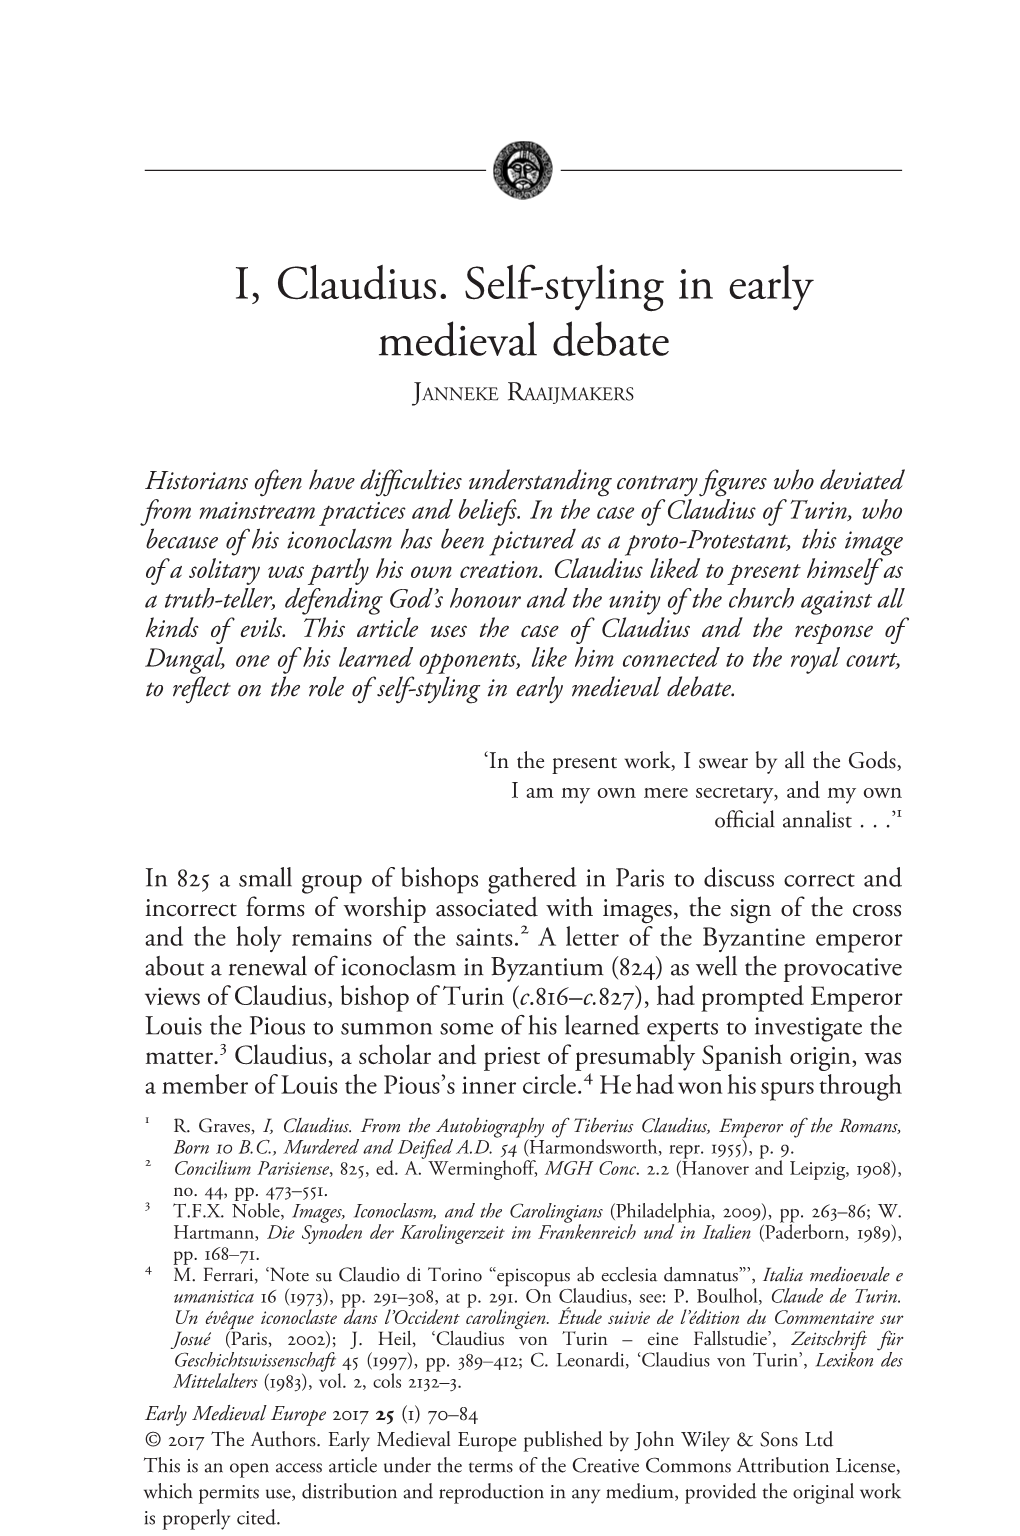 I, Claudius. Self-Styling in Early Medieval Debate JANNEKE RAAIJMAKERS